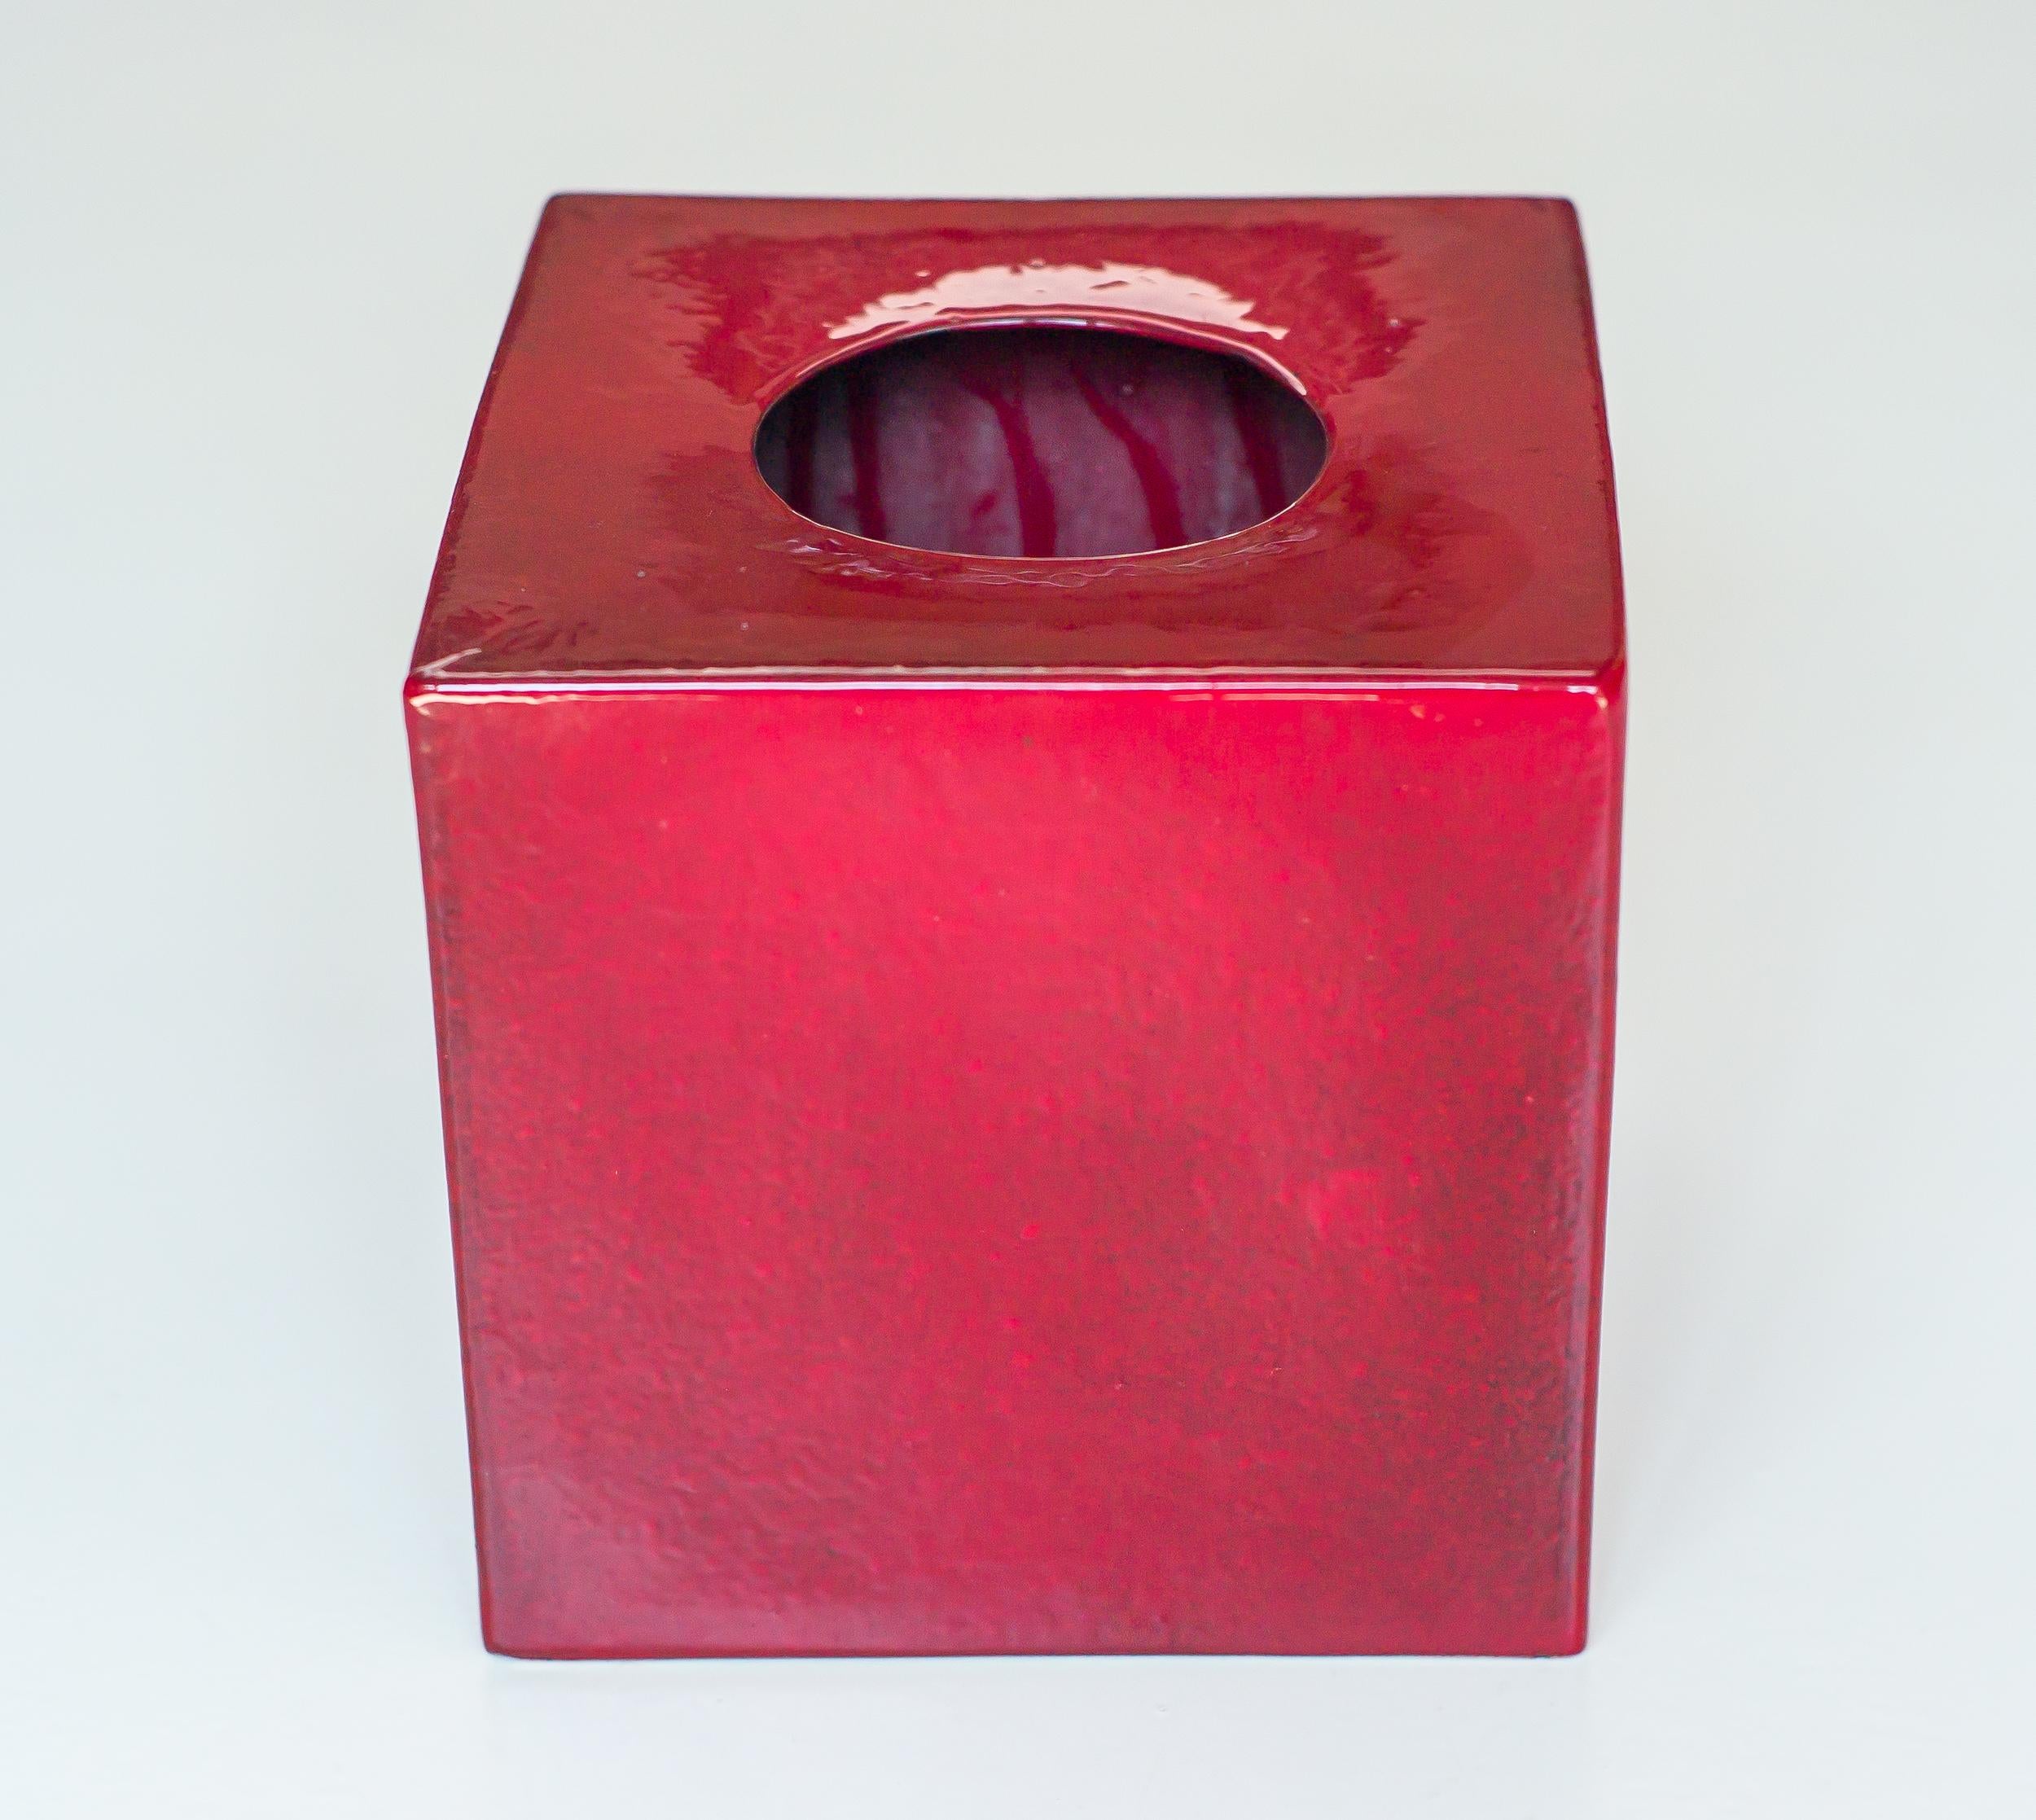 Vase rouge sang de boeuf modèle 585 conçu par Ettore Sottsass en 1960.
Réalisé vers 1961 par la Società Ceramica Toscana di Figline pour la galerie milanaise Il Sestante en différentes couleurs.
Signé en bas.
Littérature ; Ferrari Fulvio, Sottsass :